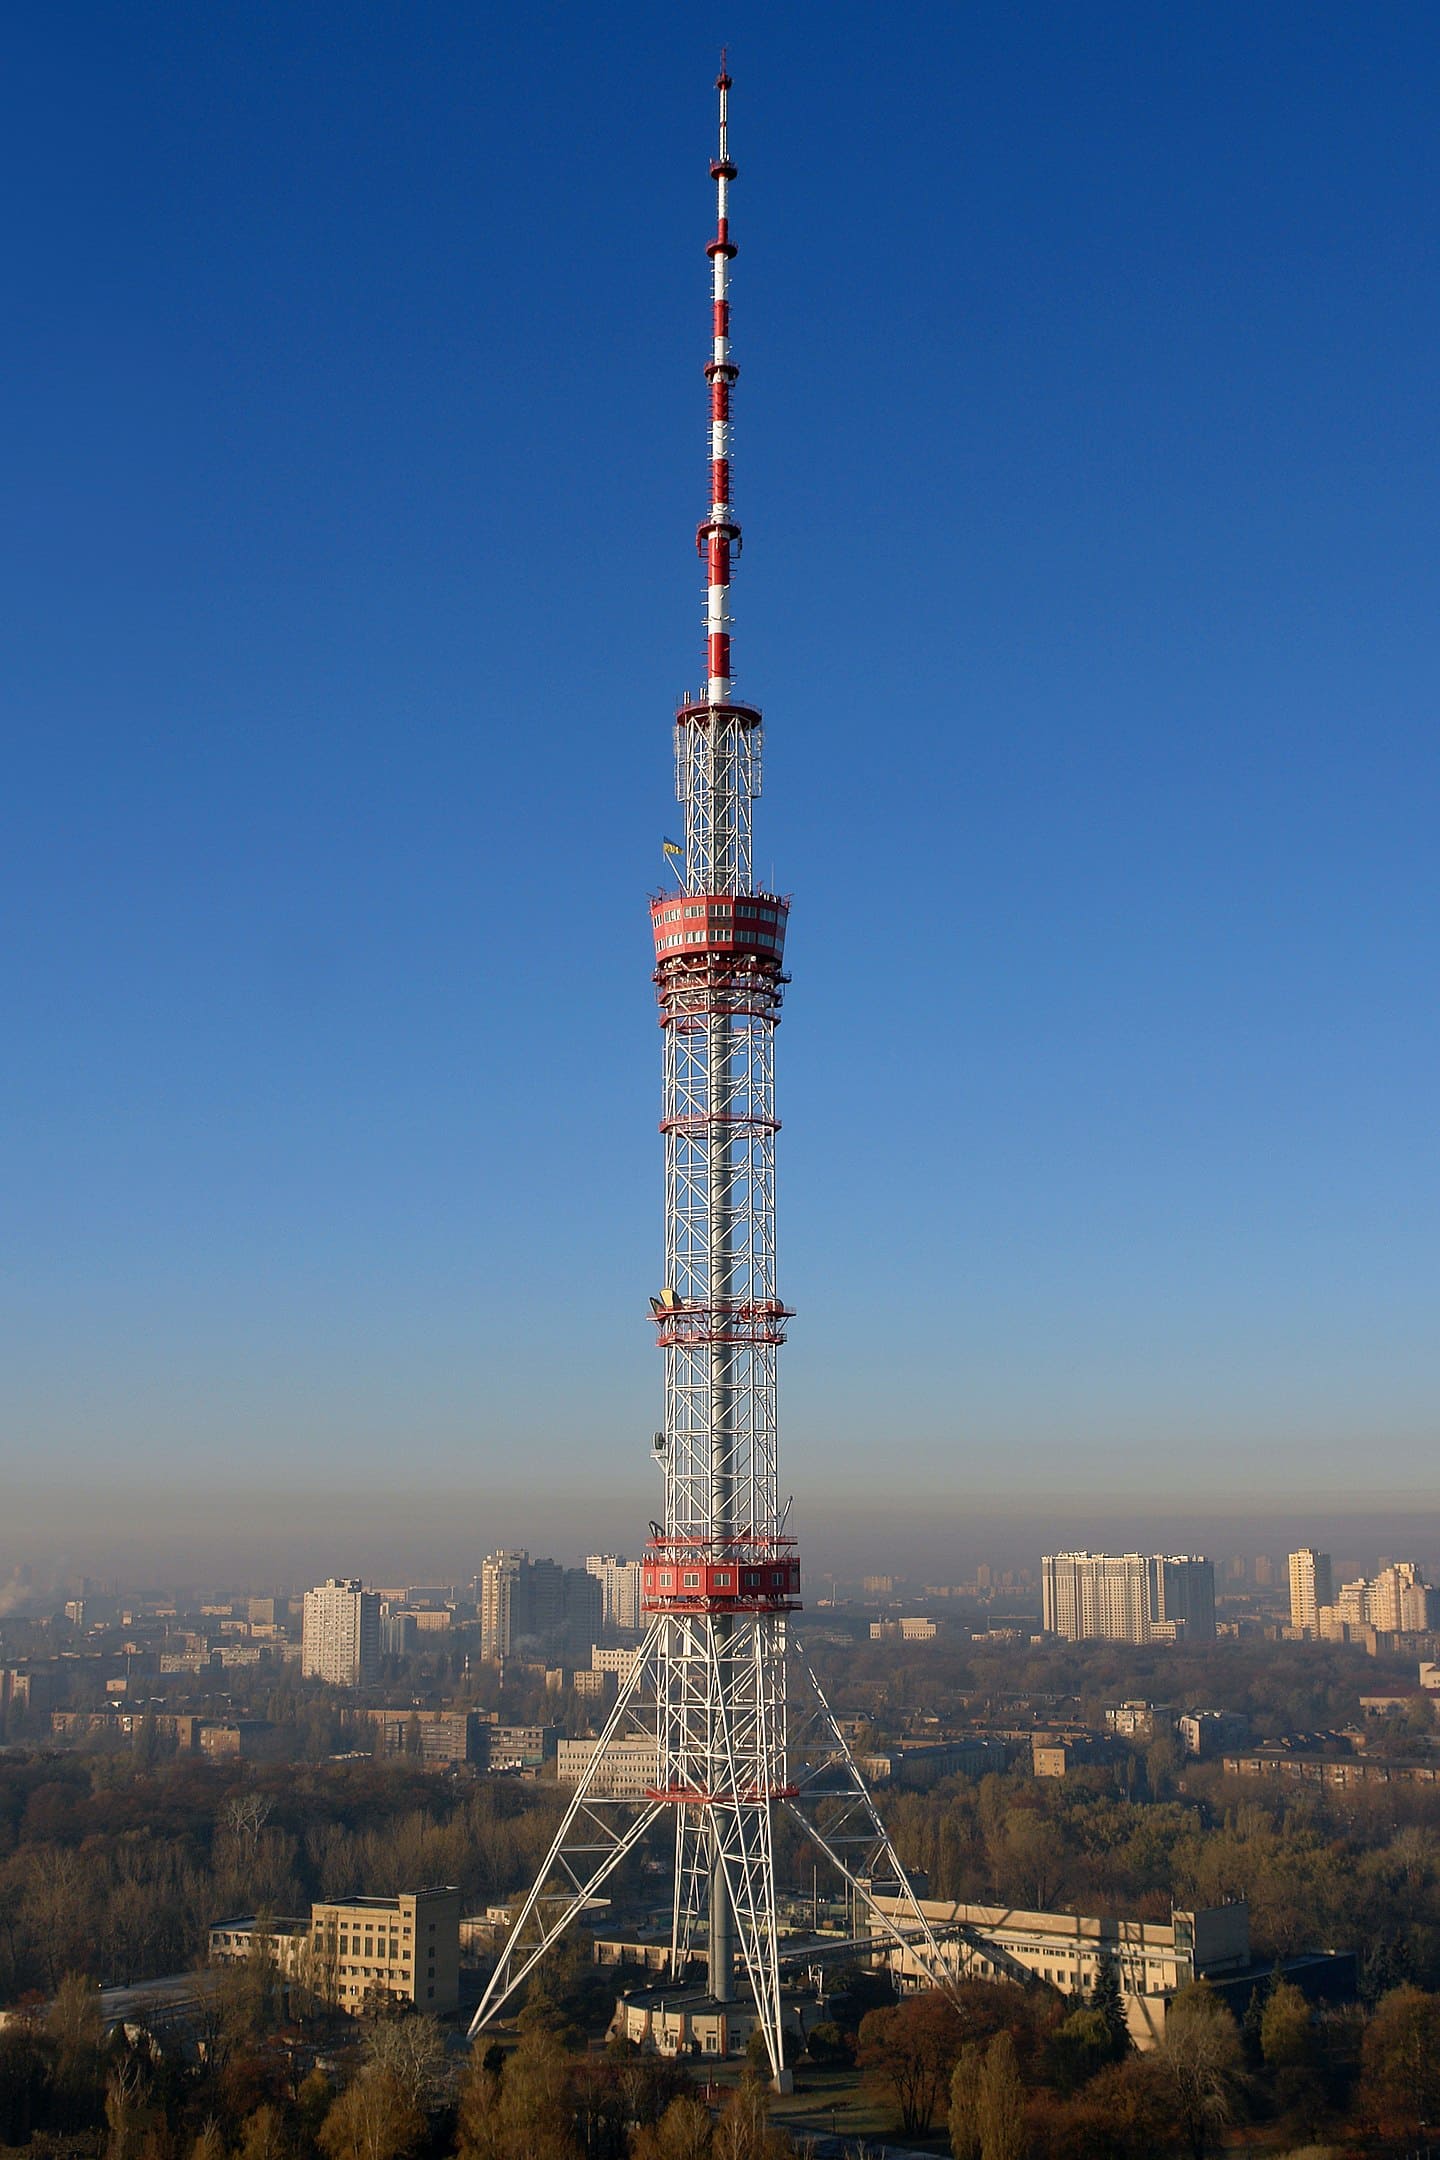 Kiev TV Tower - 385 metros - Ucrânia - Foi inaugurada em 1974 na capital Kiev para transmitir sinais de rádio e TV. Com um design que toma forma de agulha e se estreita em direção ao céu, a torre oferece vistas espetaculares do rio Dnieper.